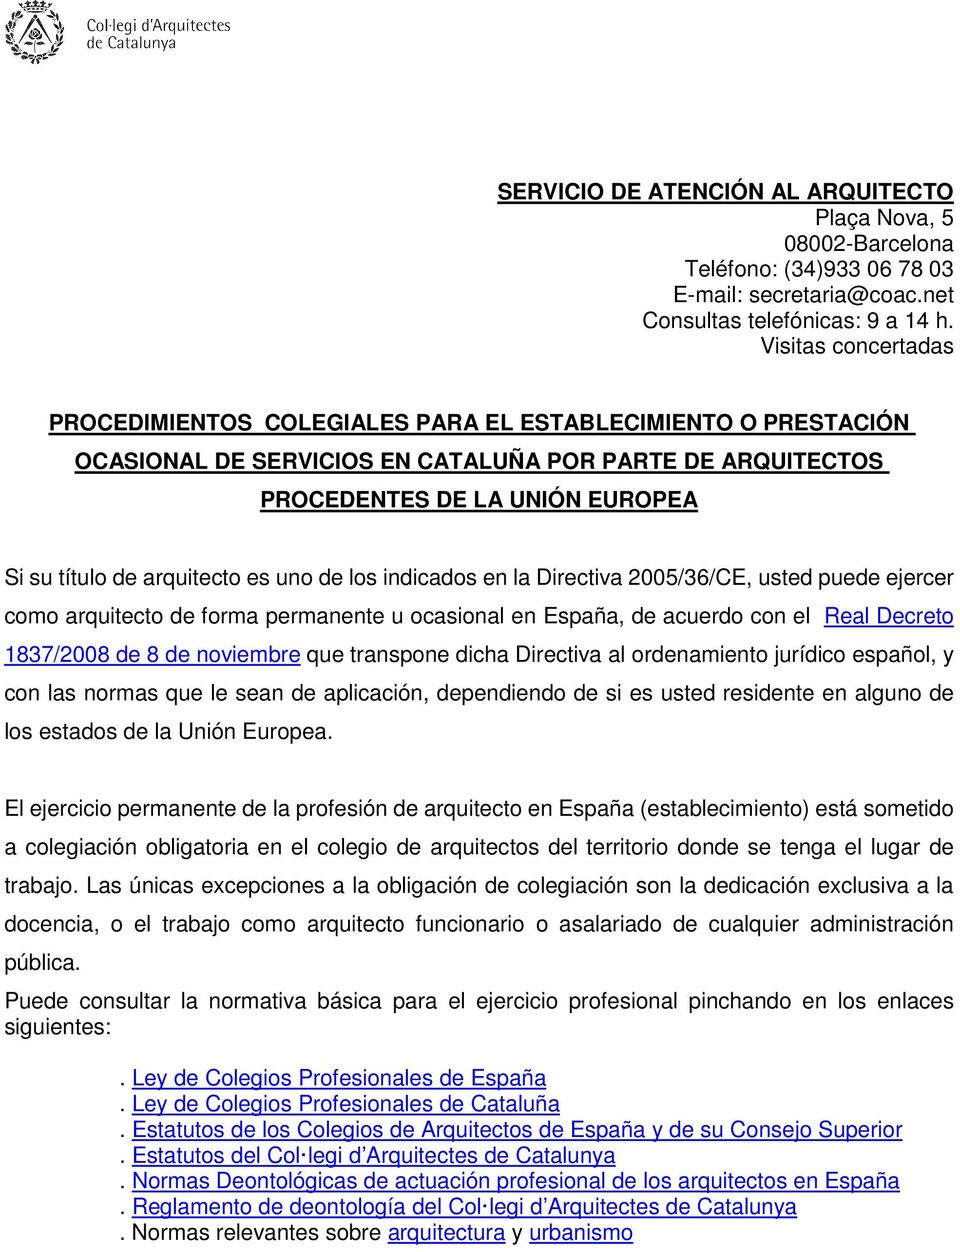 arquitecto es uno de los indicados en la Directiva 2005/36/CE, usted puede ejercer como arquitecto de forma permanente u ocasional en España, de acuerdo con el Real Decreto 1837/2008 de 8 de